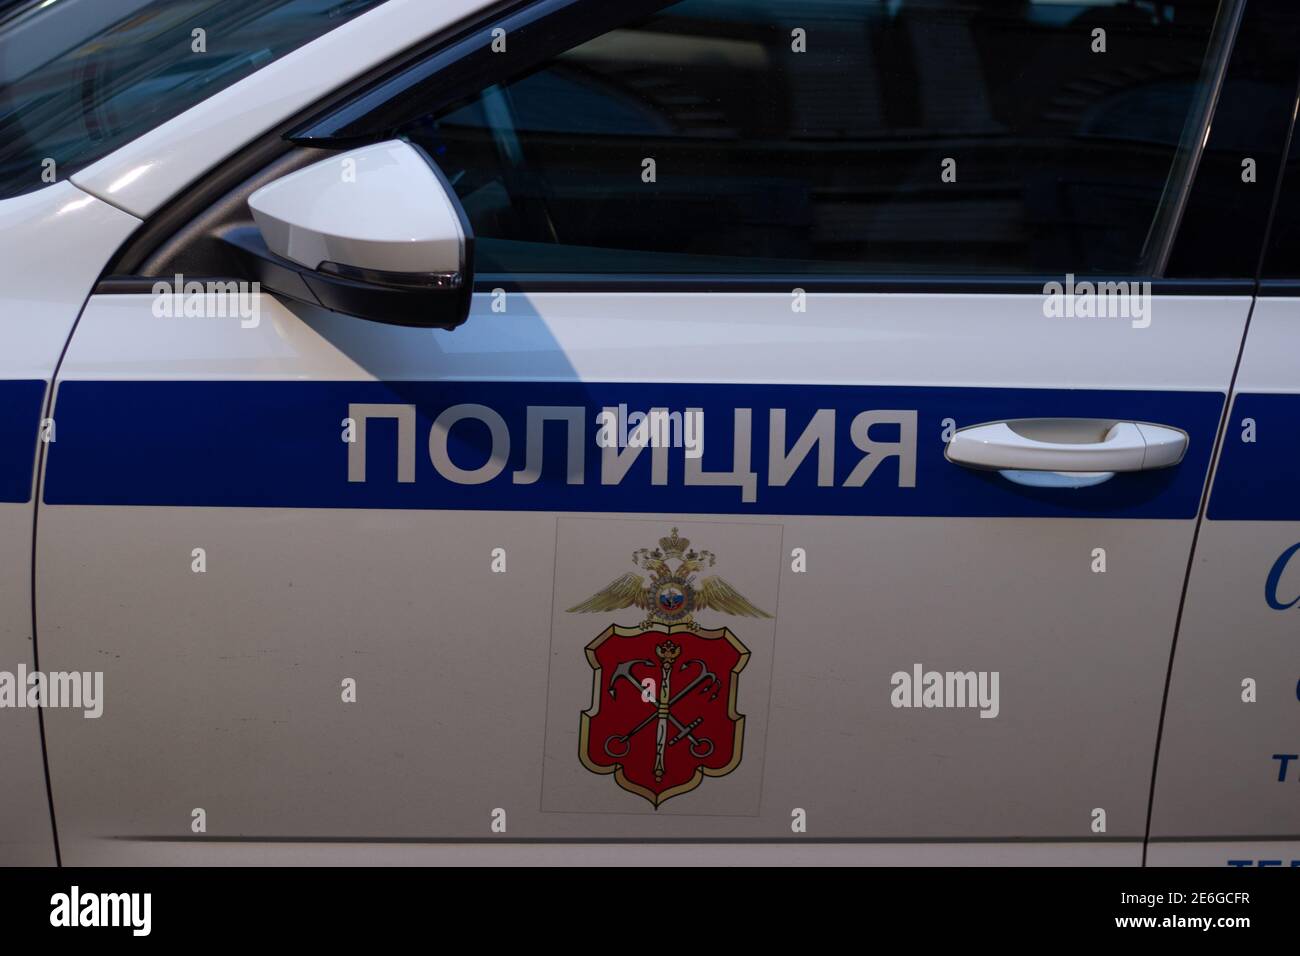 Saint-Pétersbourg, Russie - 28 janvier 2021 : voiture de police dans la rue, éditorial Banque D'Images